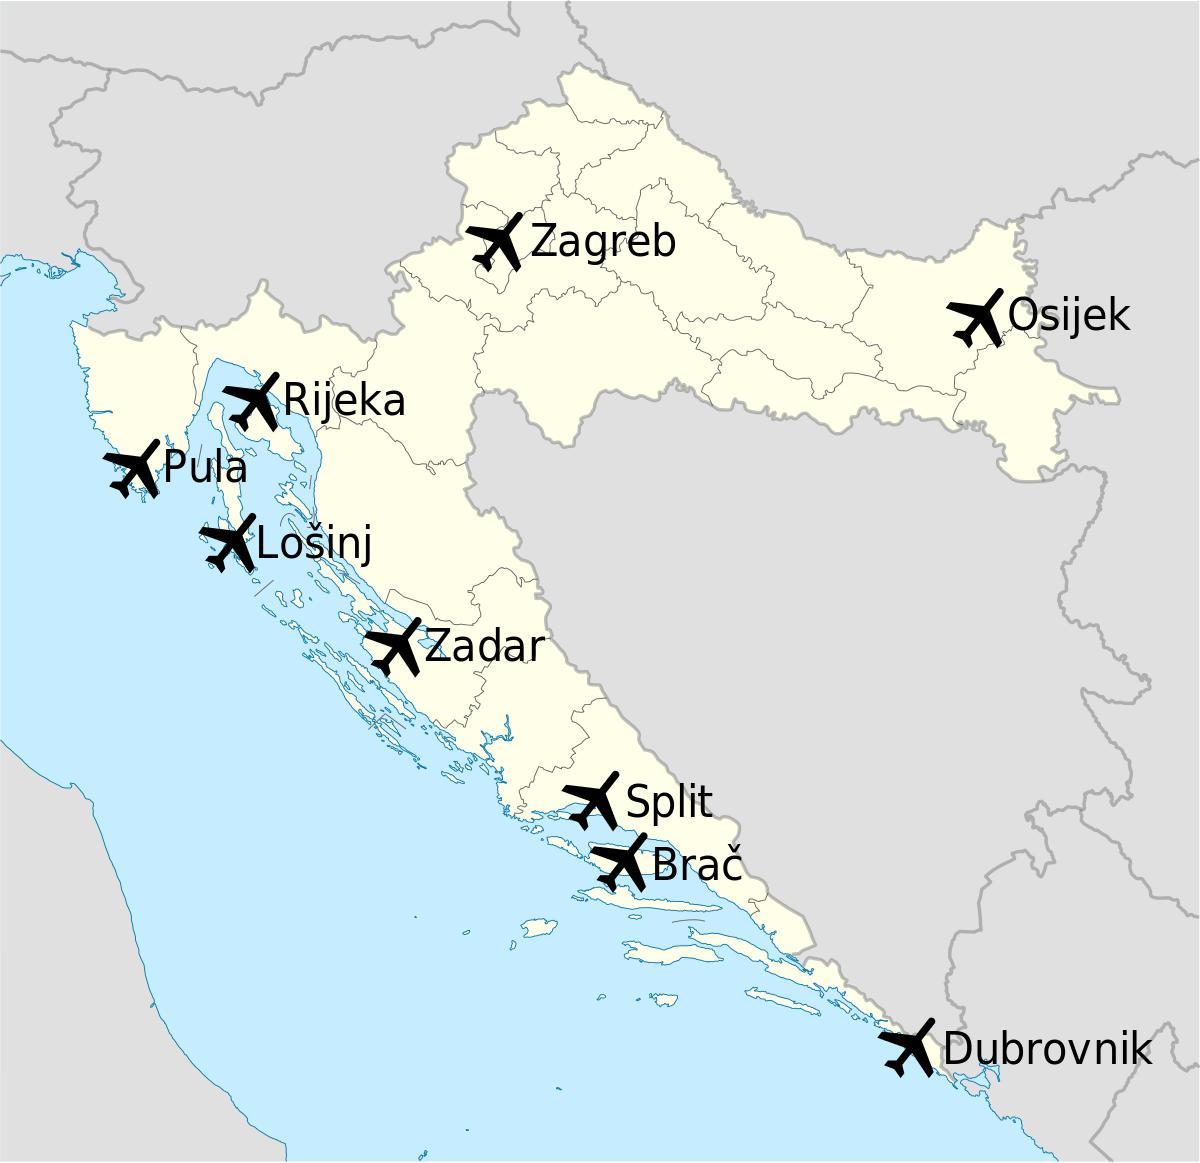 mapa de croacia mostrando los aeropuertos